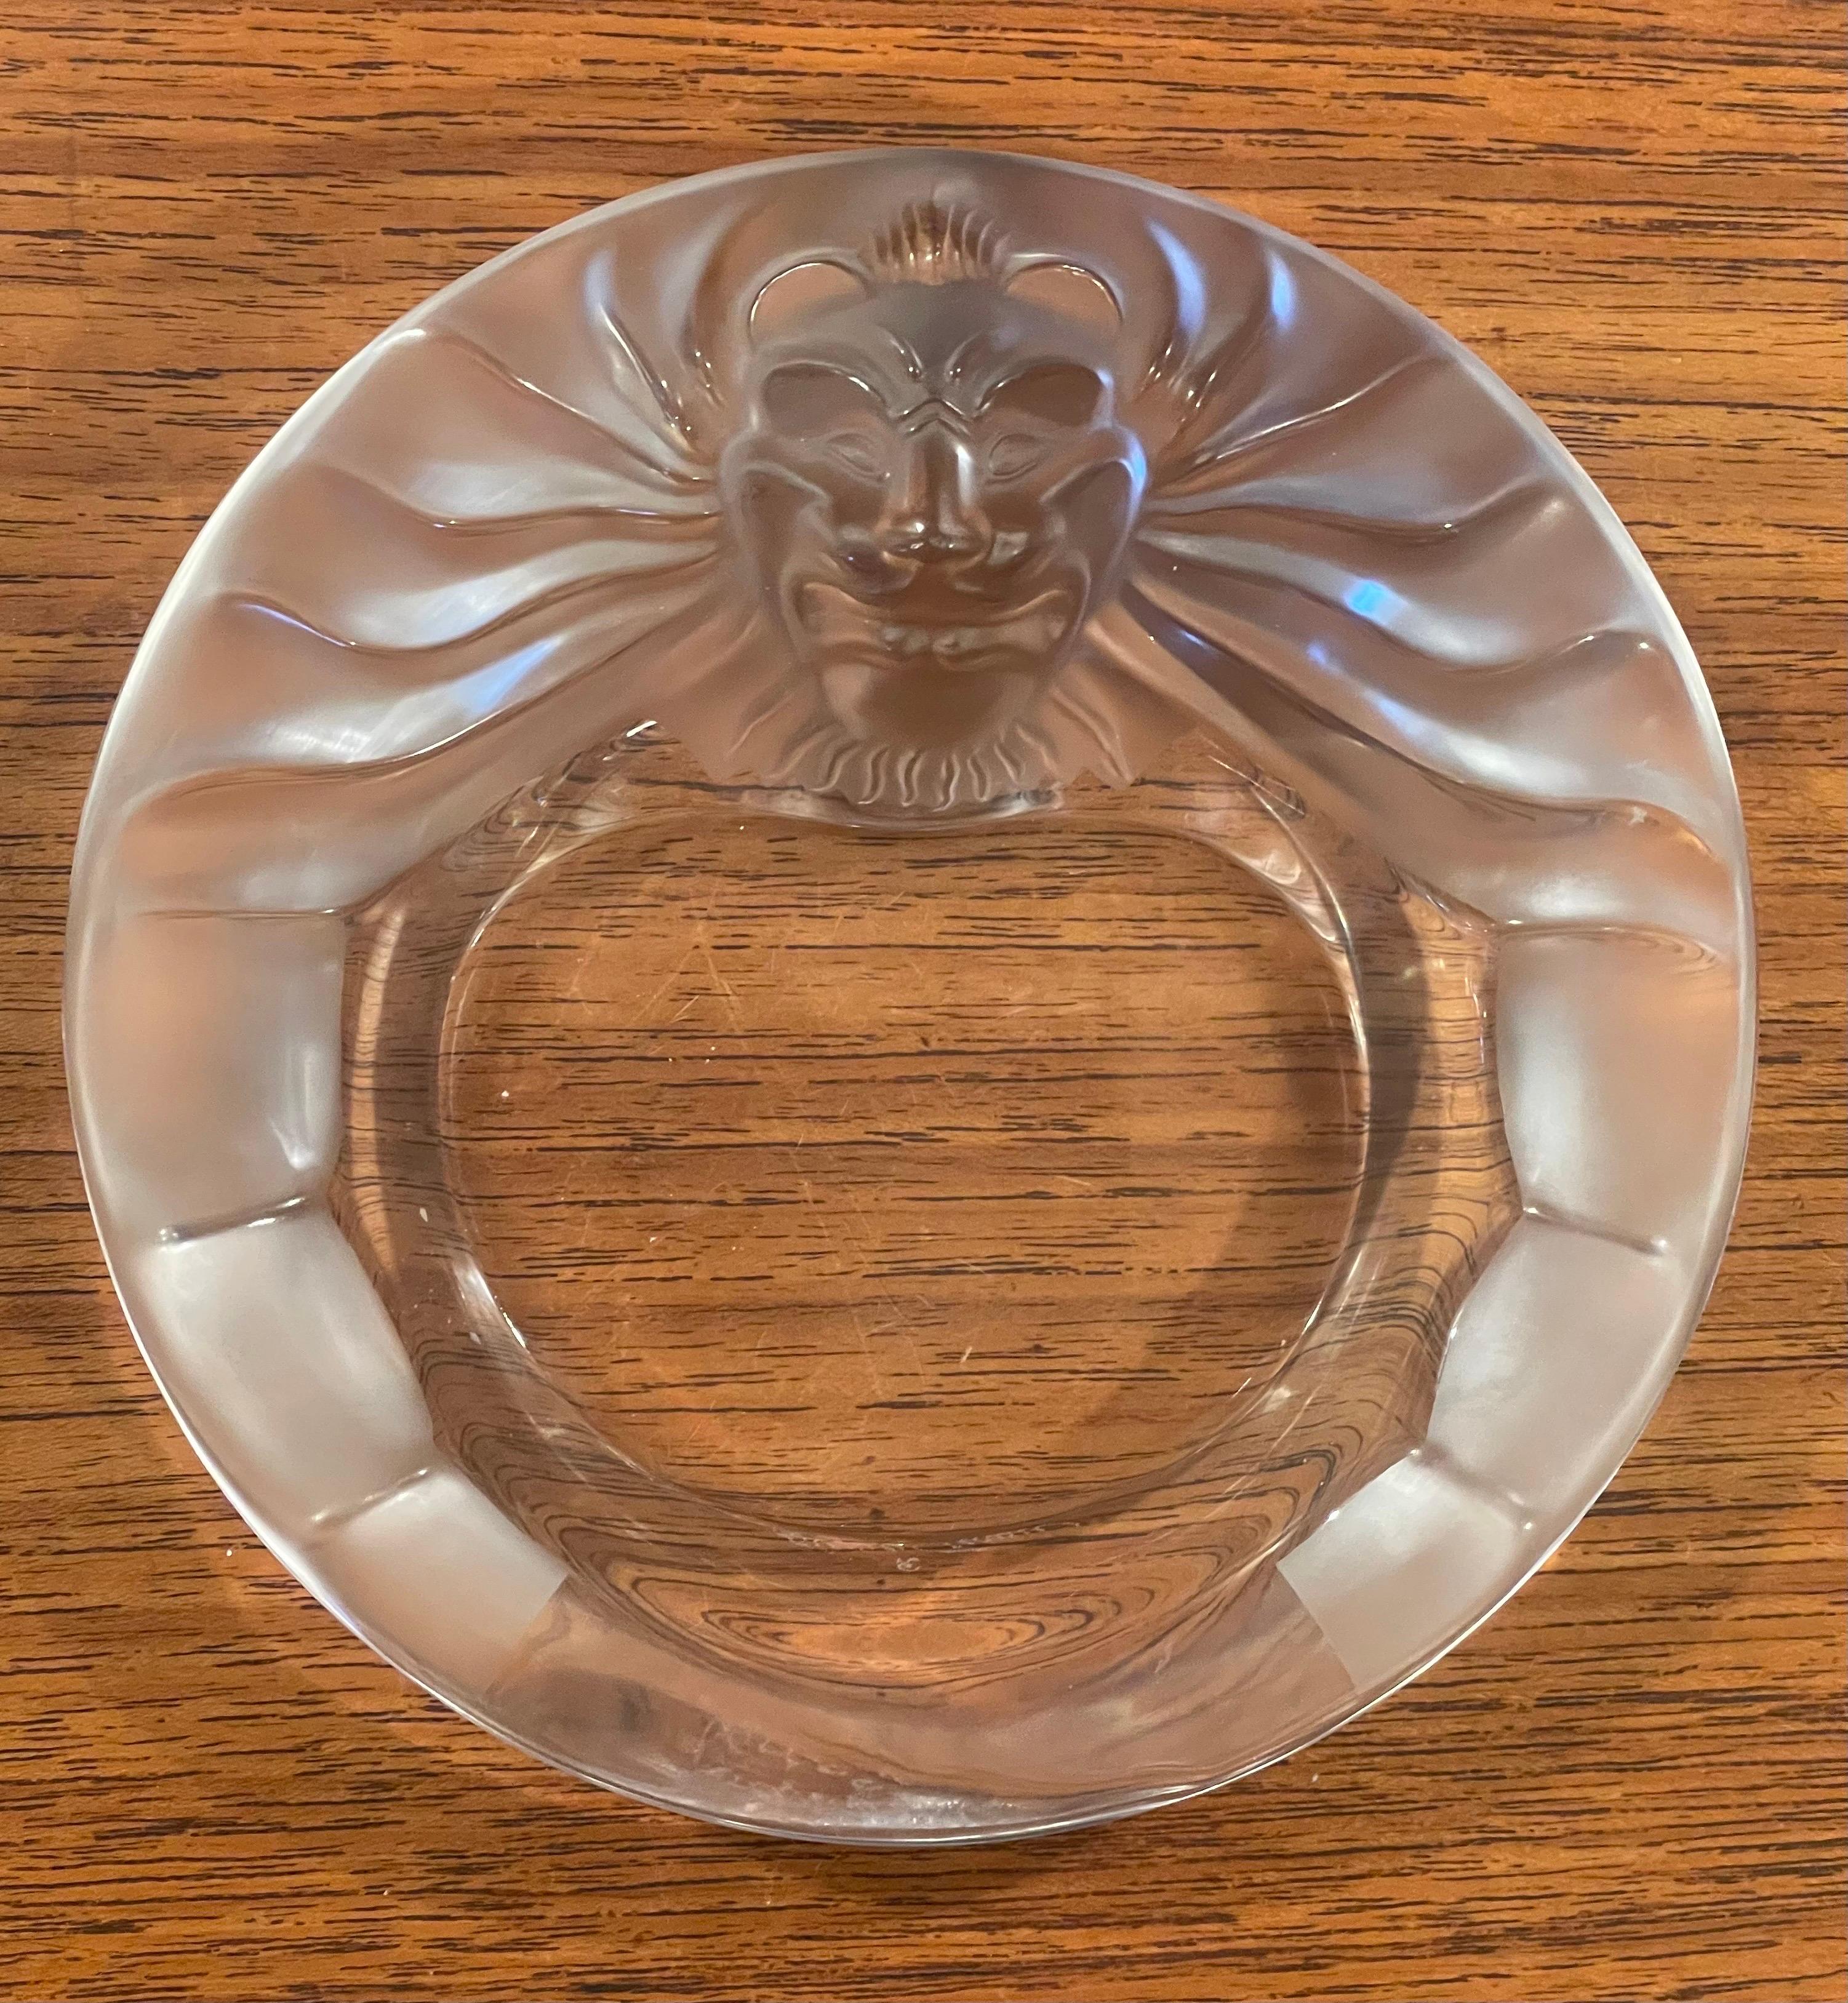 Magnifique cendrier / bol à cigares en cristal à tête de lion par Lalique de France, vers les années 2000. Cette pièce étonnante présente une tête de lion en relief avec un contraste de texture claire et givrée. La pièce mesure 5.75